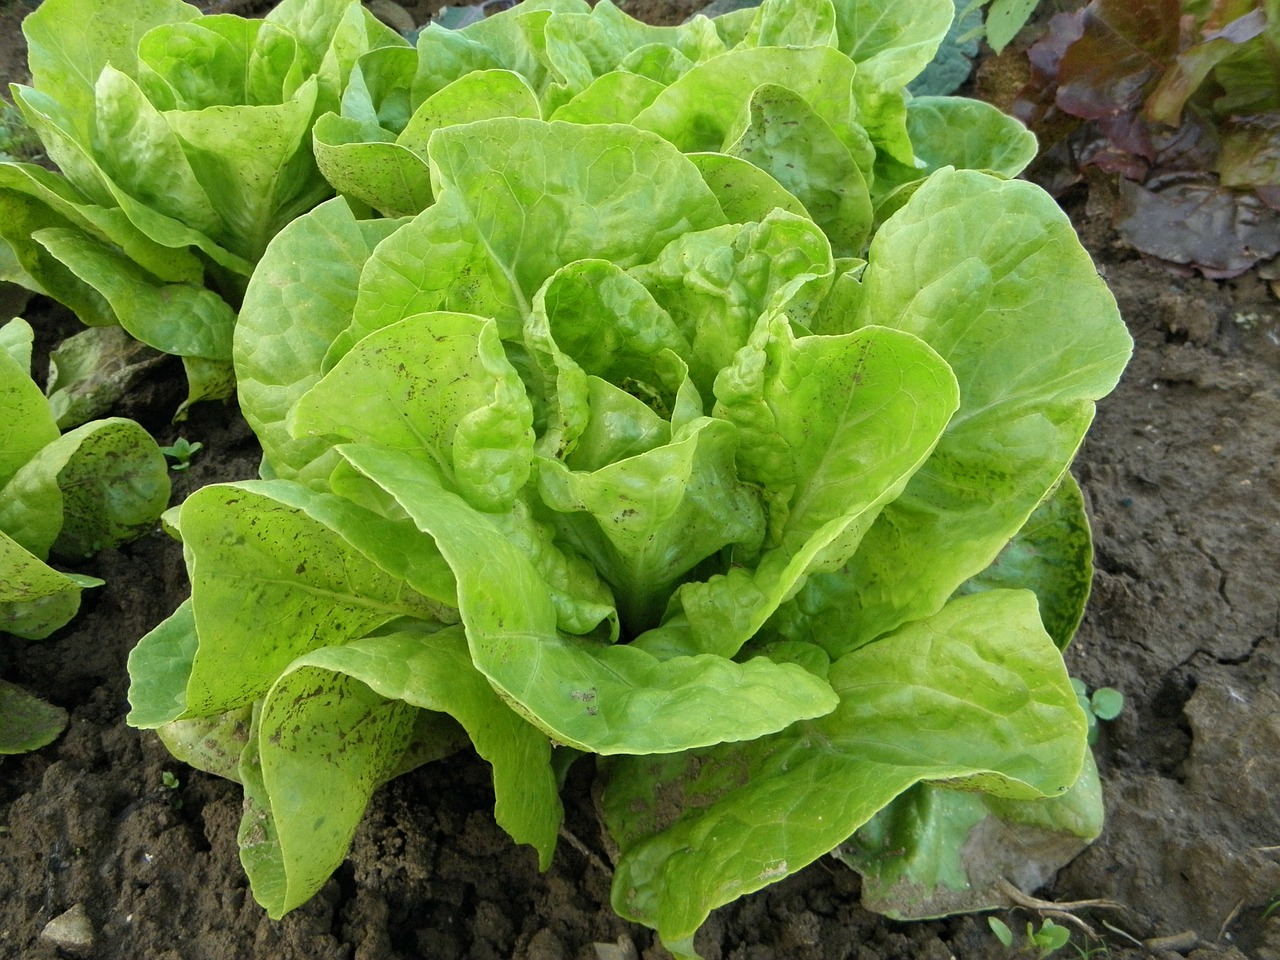 types of lettuce